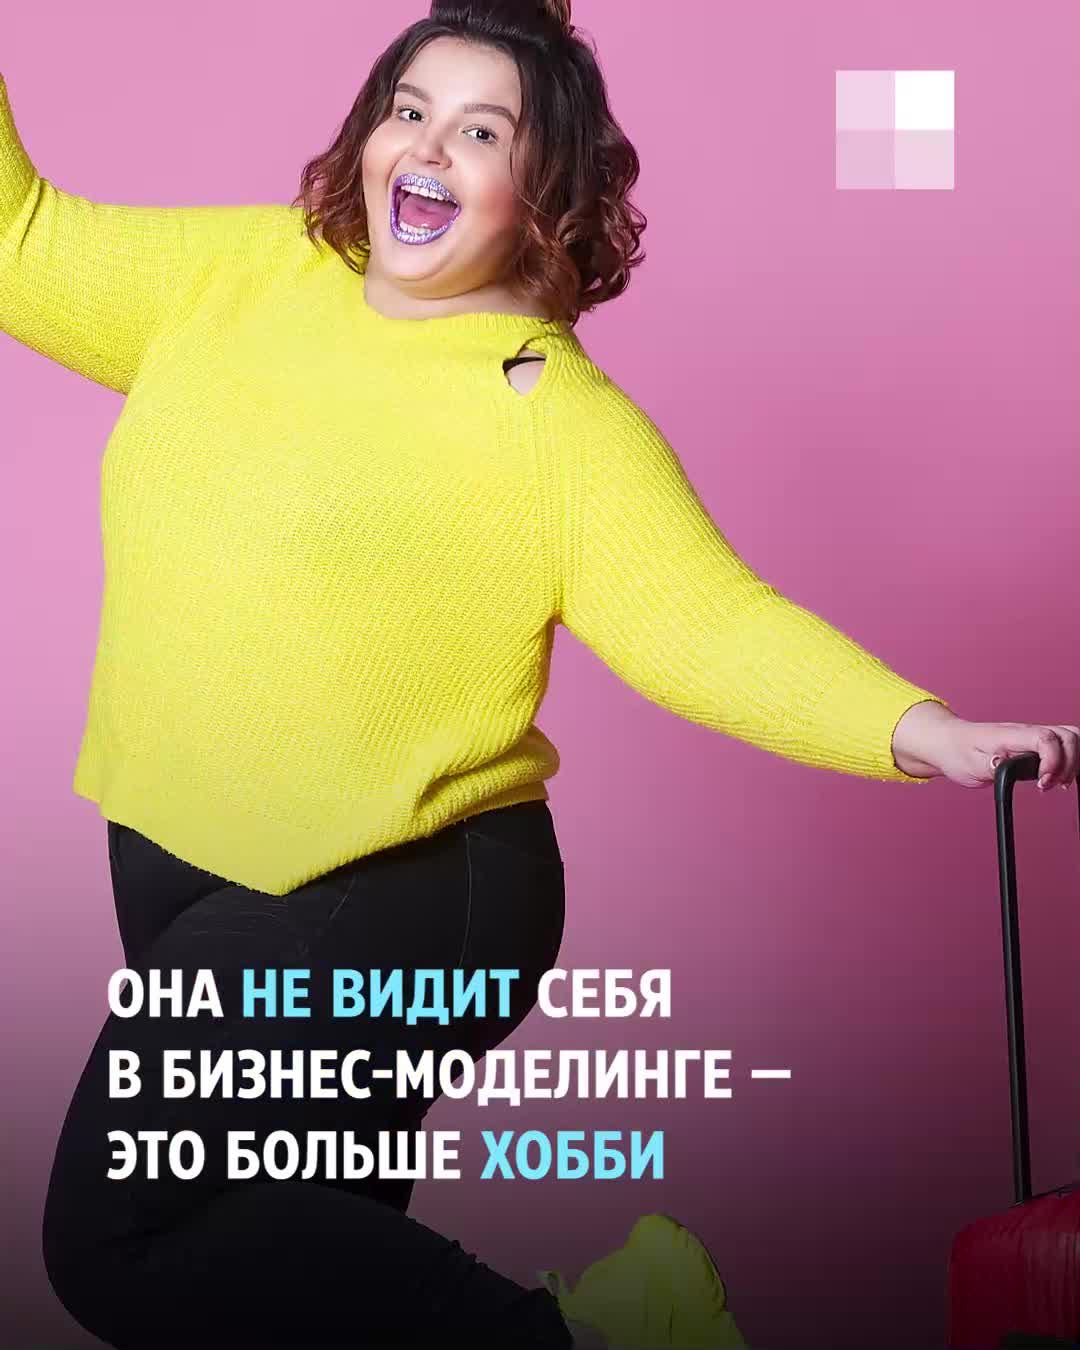 Одевает латекс - порно видео на chelmass.ru